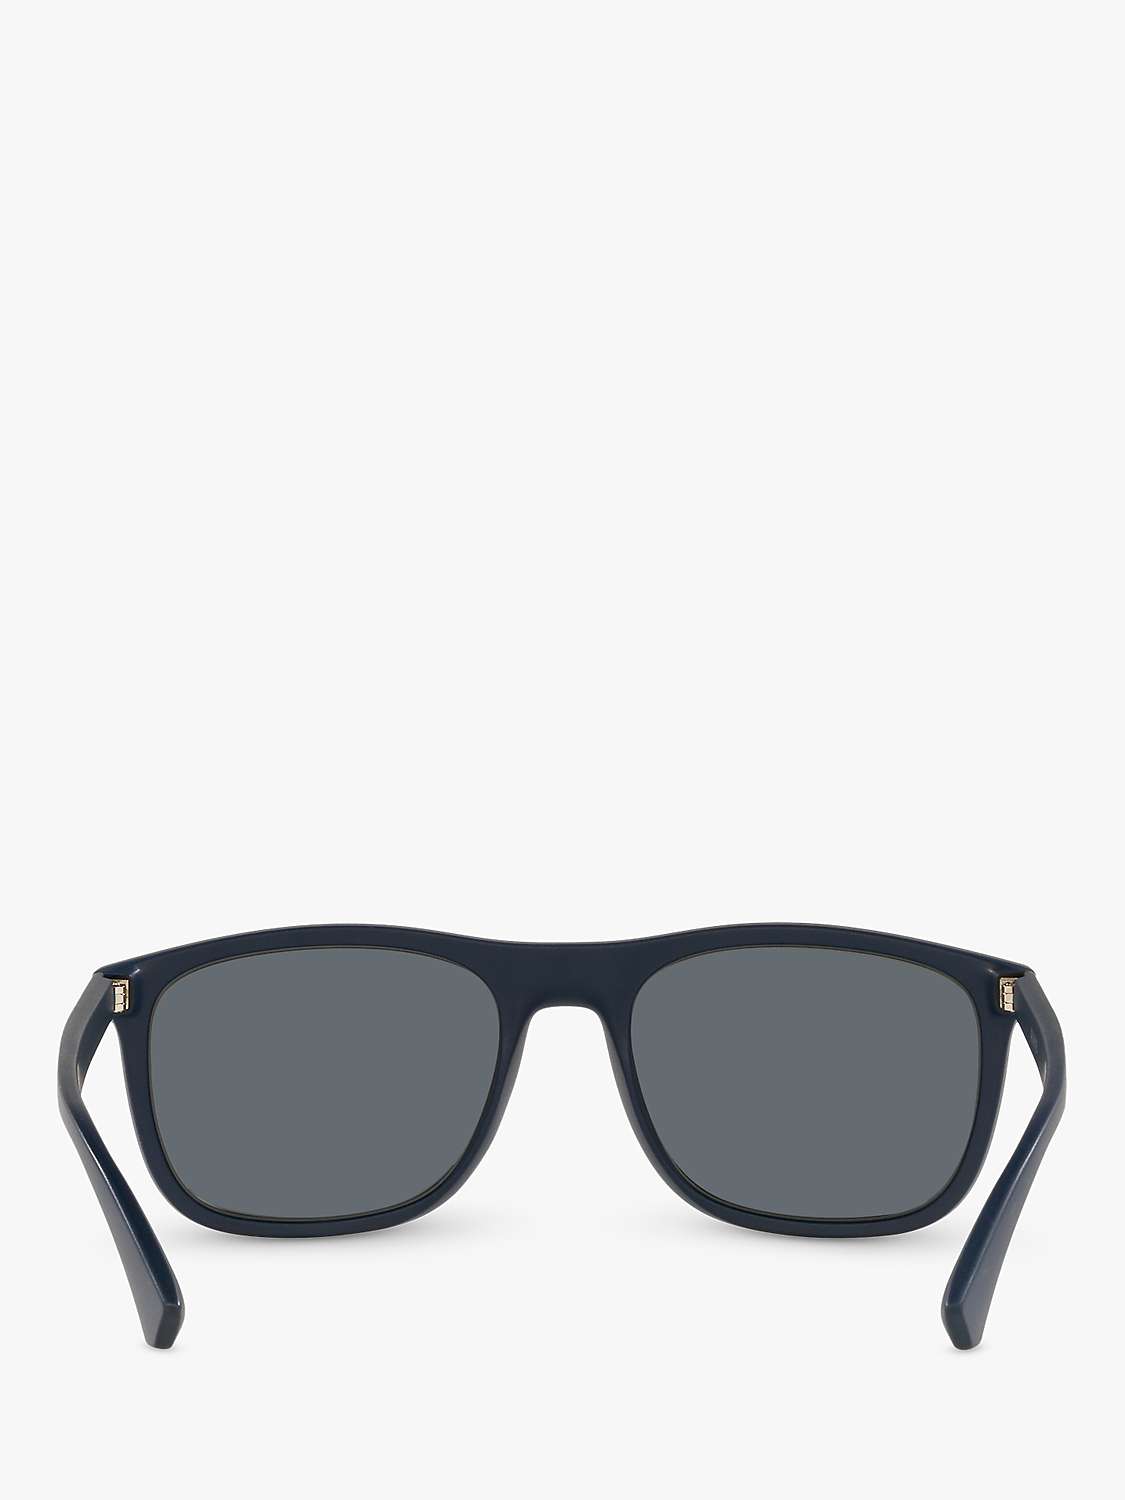 Buy Emporio Armani EA4158 Men's Square Sunglasses Online at johnlewis.com